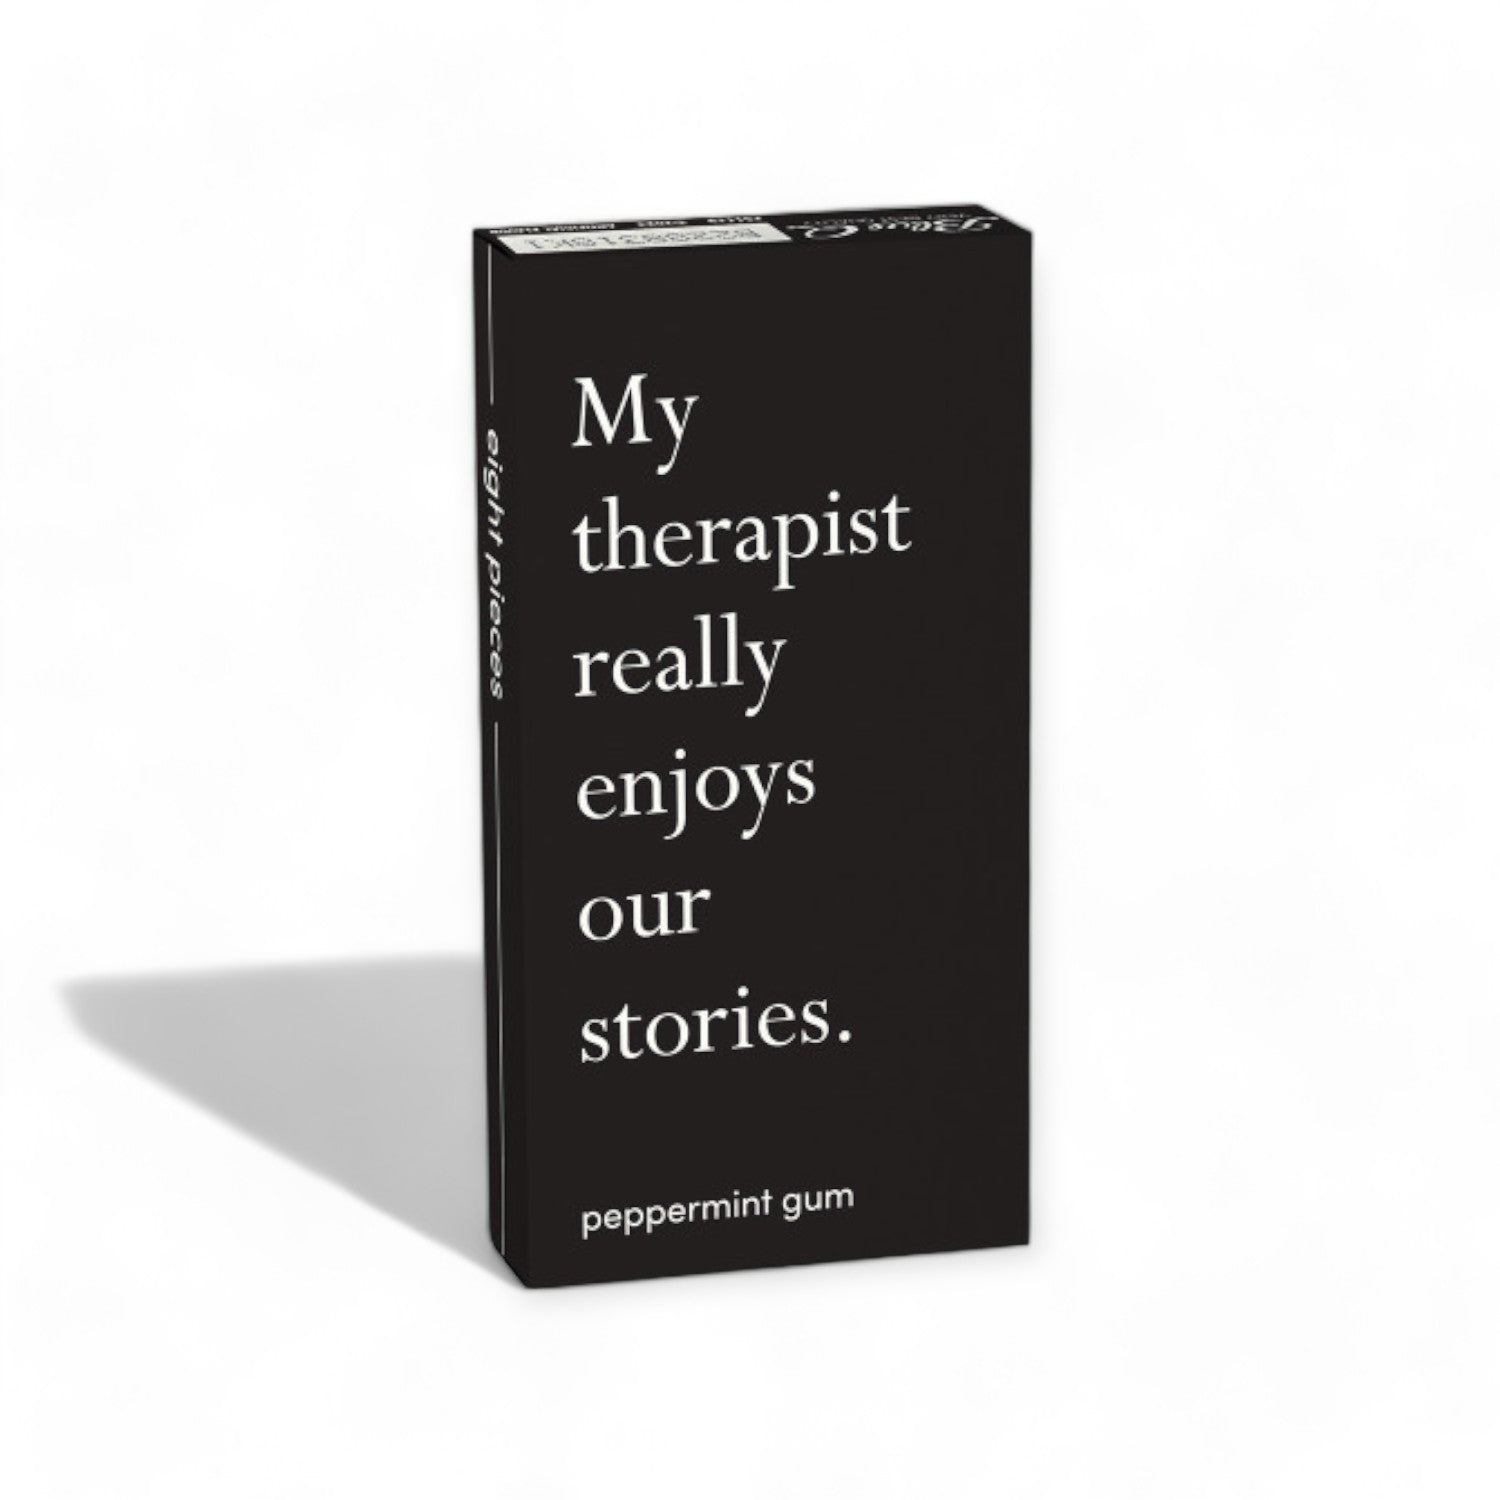 Bild einer fröhlichen "My Therapist" Kaugummipackung in beruhigenden Farben mit einer Minzblatt-Illustration, um den frischen Minzgeschmack zu symbolisieren.